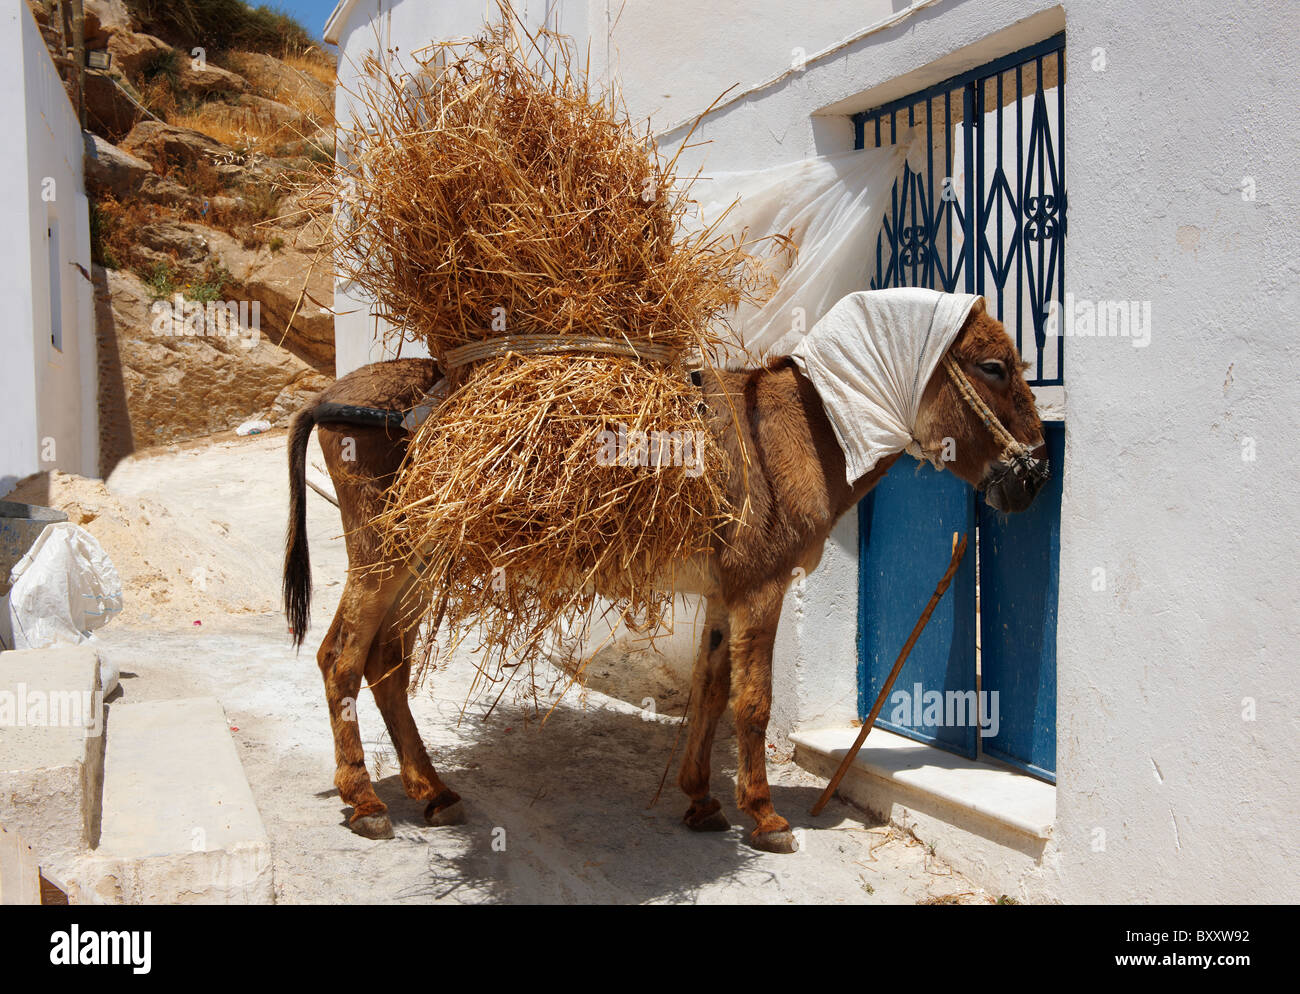 Esel, beladen mit Heu schlafen in der Mitte Tag Sonne. Naxos, griechischen Kykladen-Inseln Stockfoto